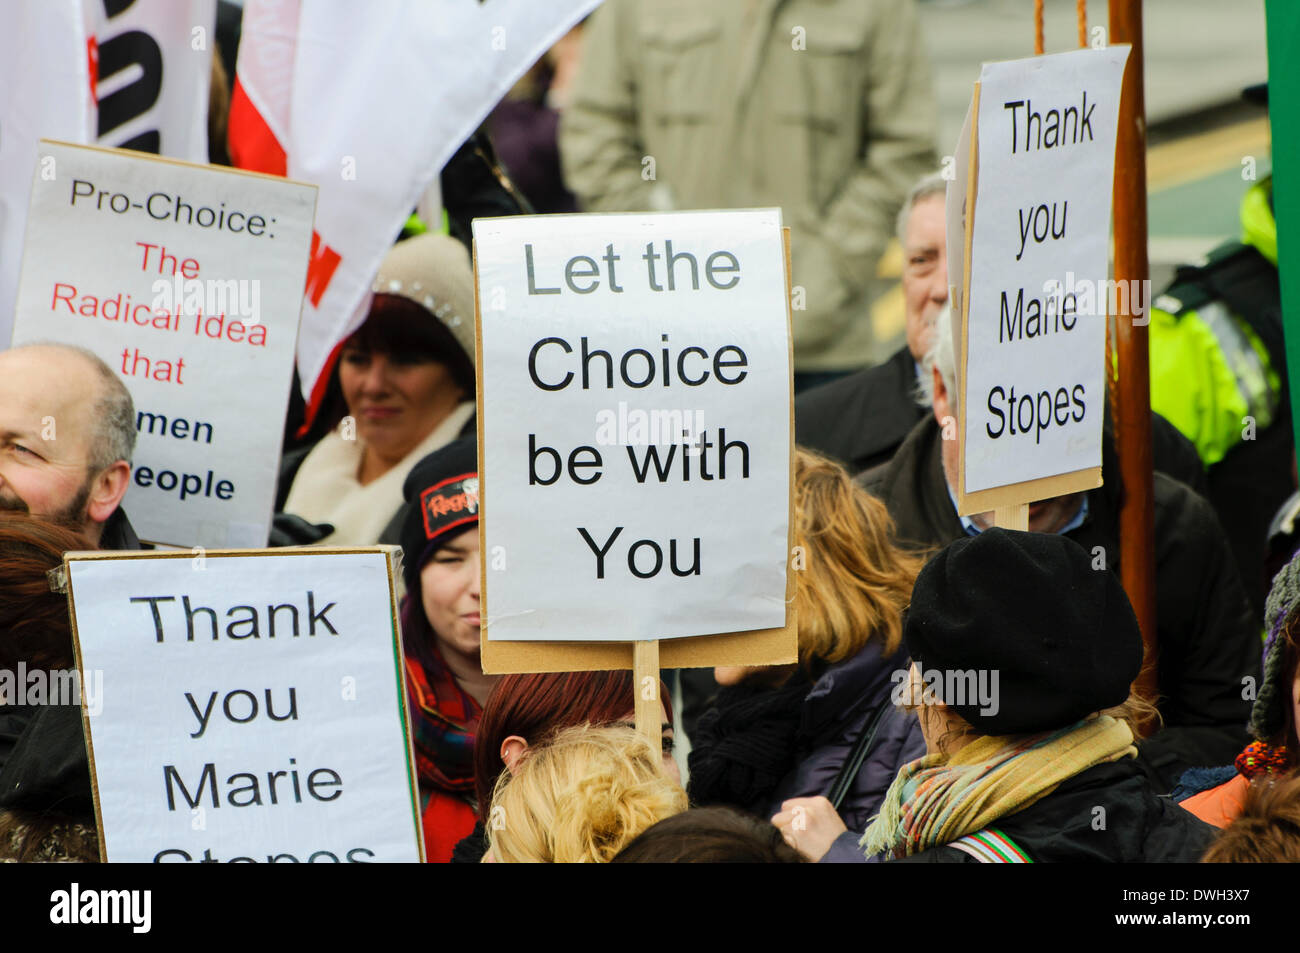 Belfast, Nordirland. 8. März 2014 - Frauen halten Plakate sagen "Danke Marie Stopes" und "Lasst die Wahl be with You" von pro-Life-Abtreibung-Aktivisten bei der internationalen Frauen Tag Feier Credit: Stephen Barnes/Alamy Live News Stockfoto